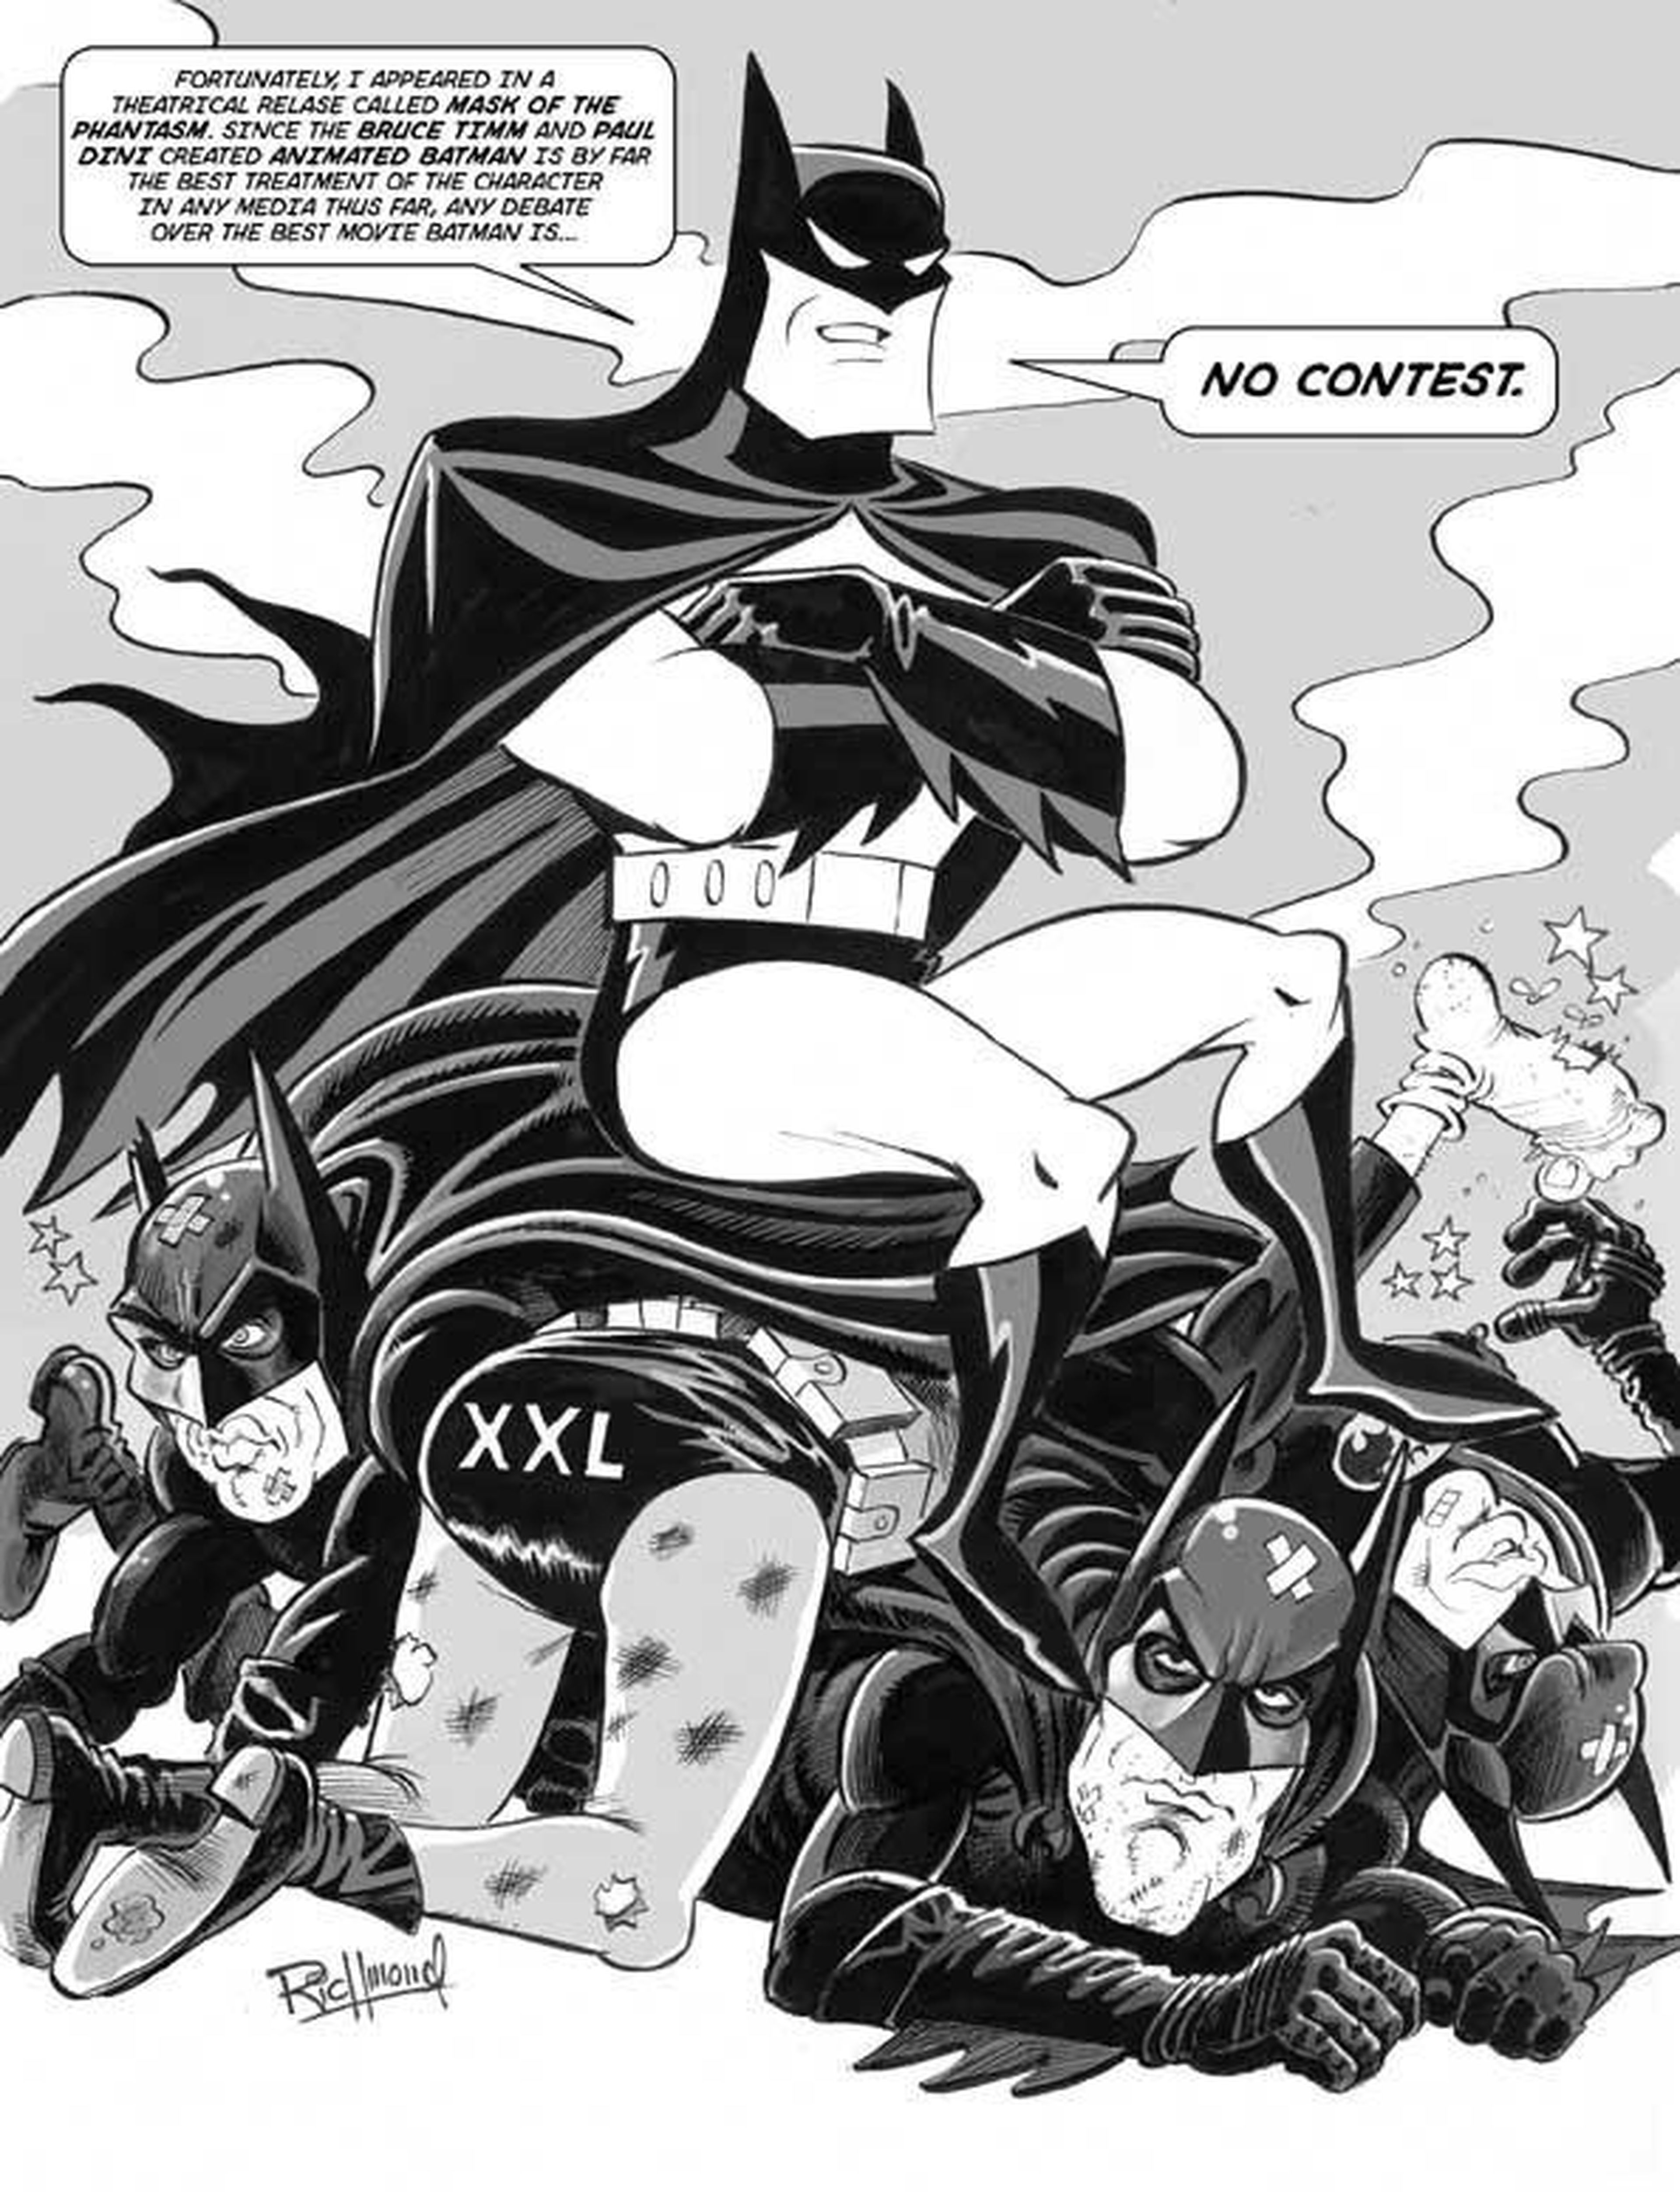 El reboot ideal de Batman según ComicBookMovie